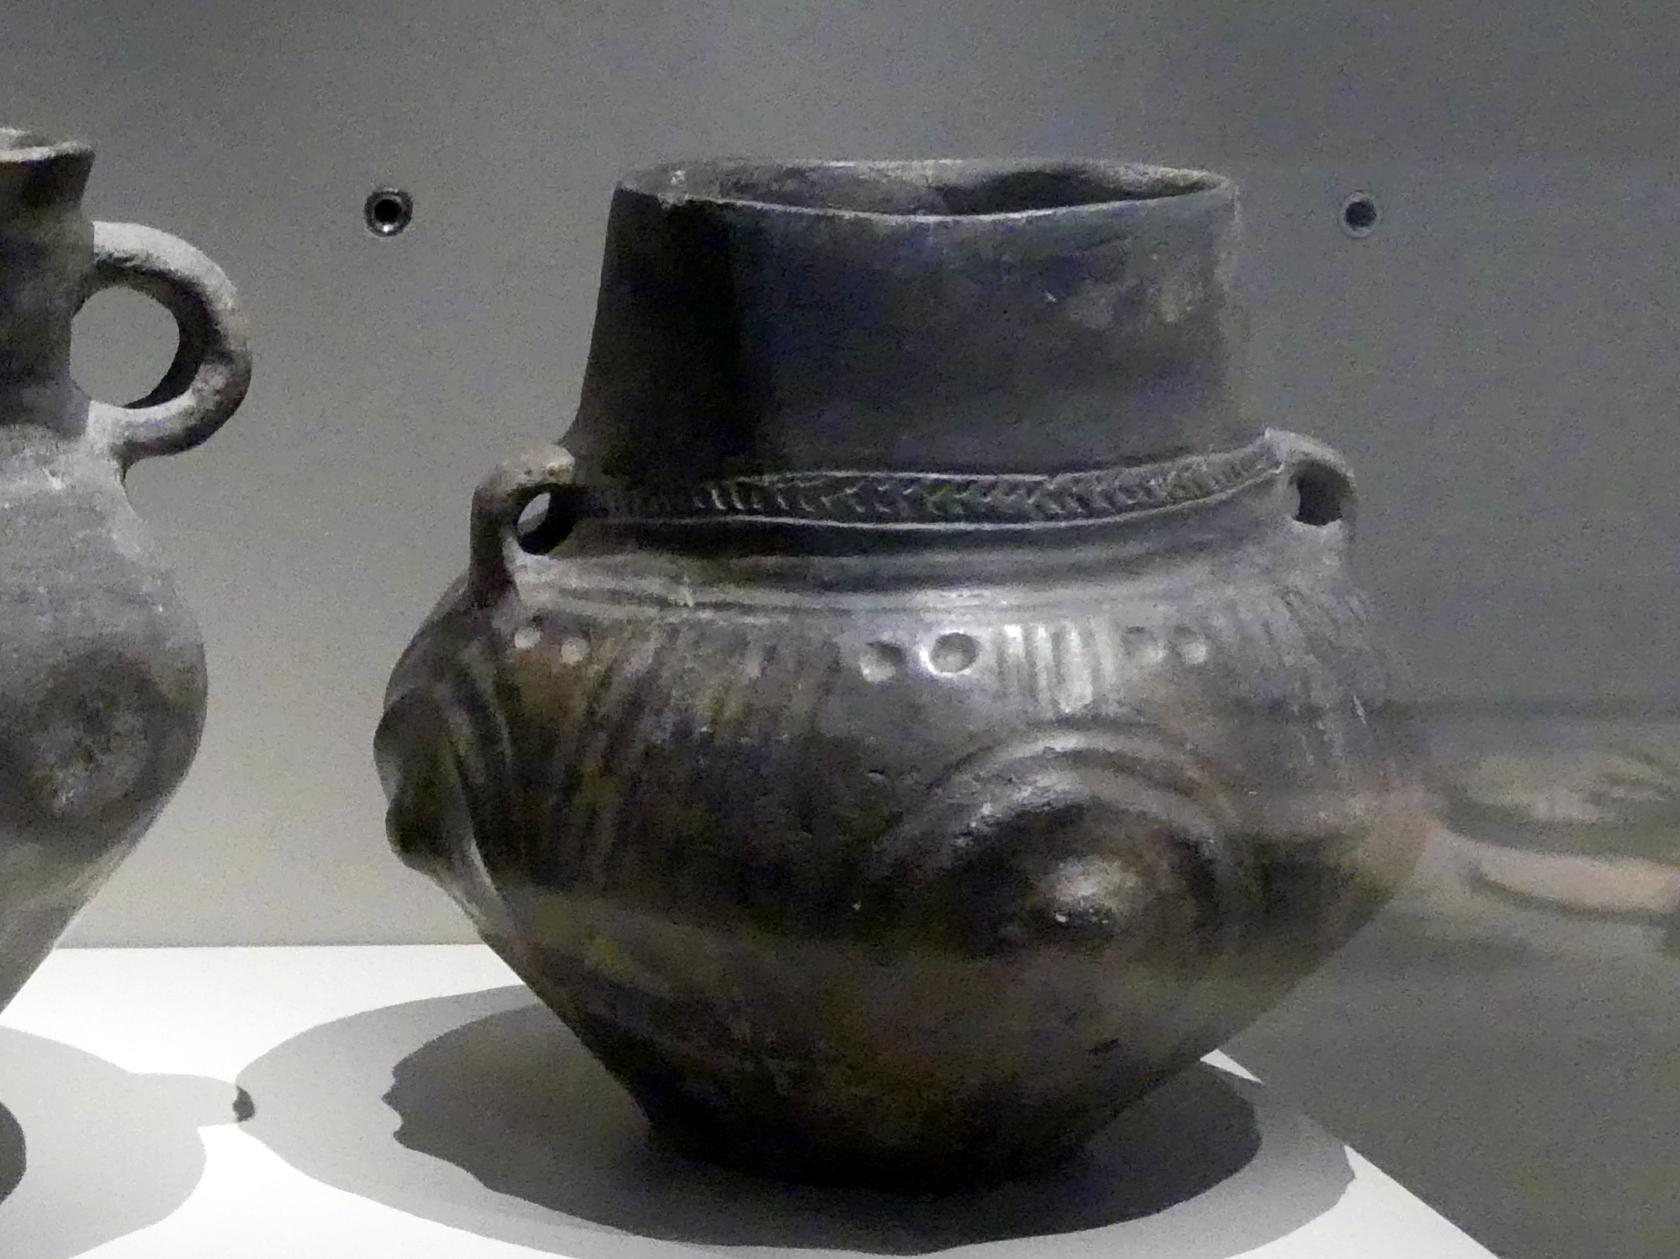 Topf, Buckel und Kannelur, Nordische Bronzezeit, 1200 - 700 v. Chr., 1200 - 1000 v. Chr., Bild 1/2